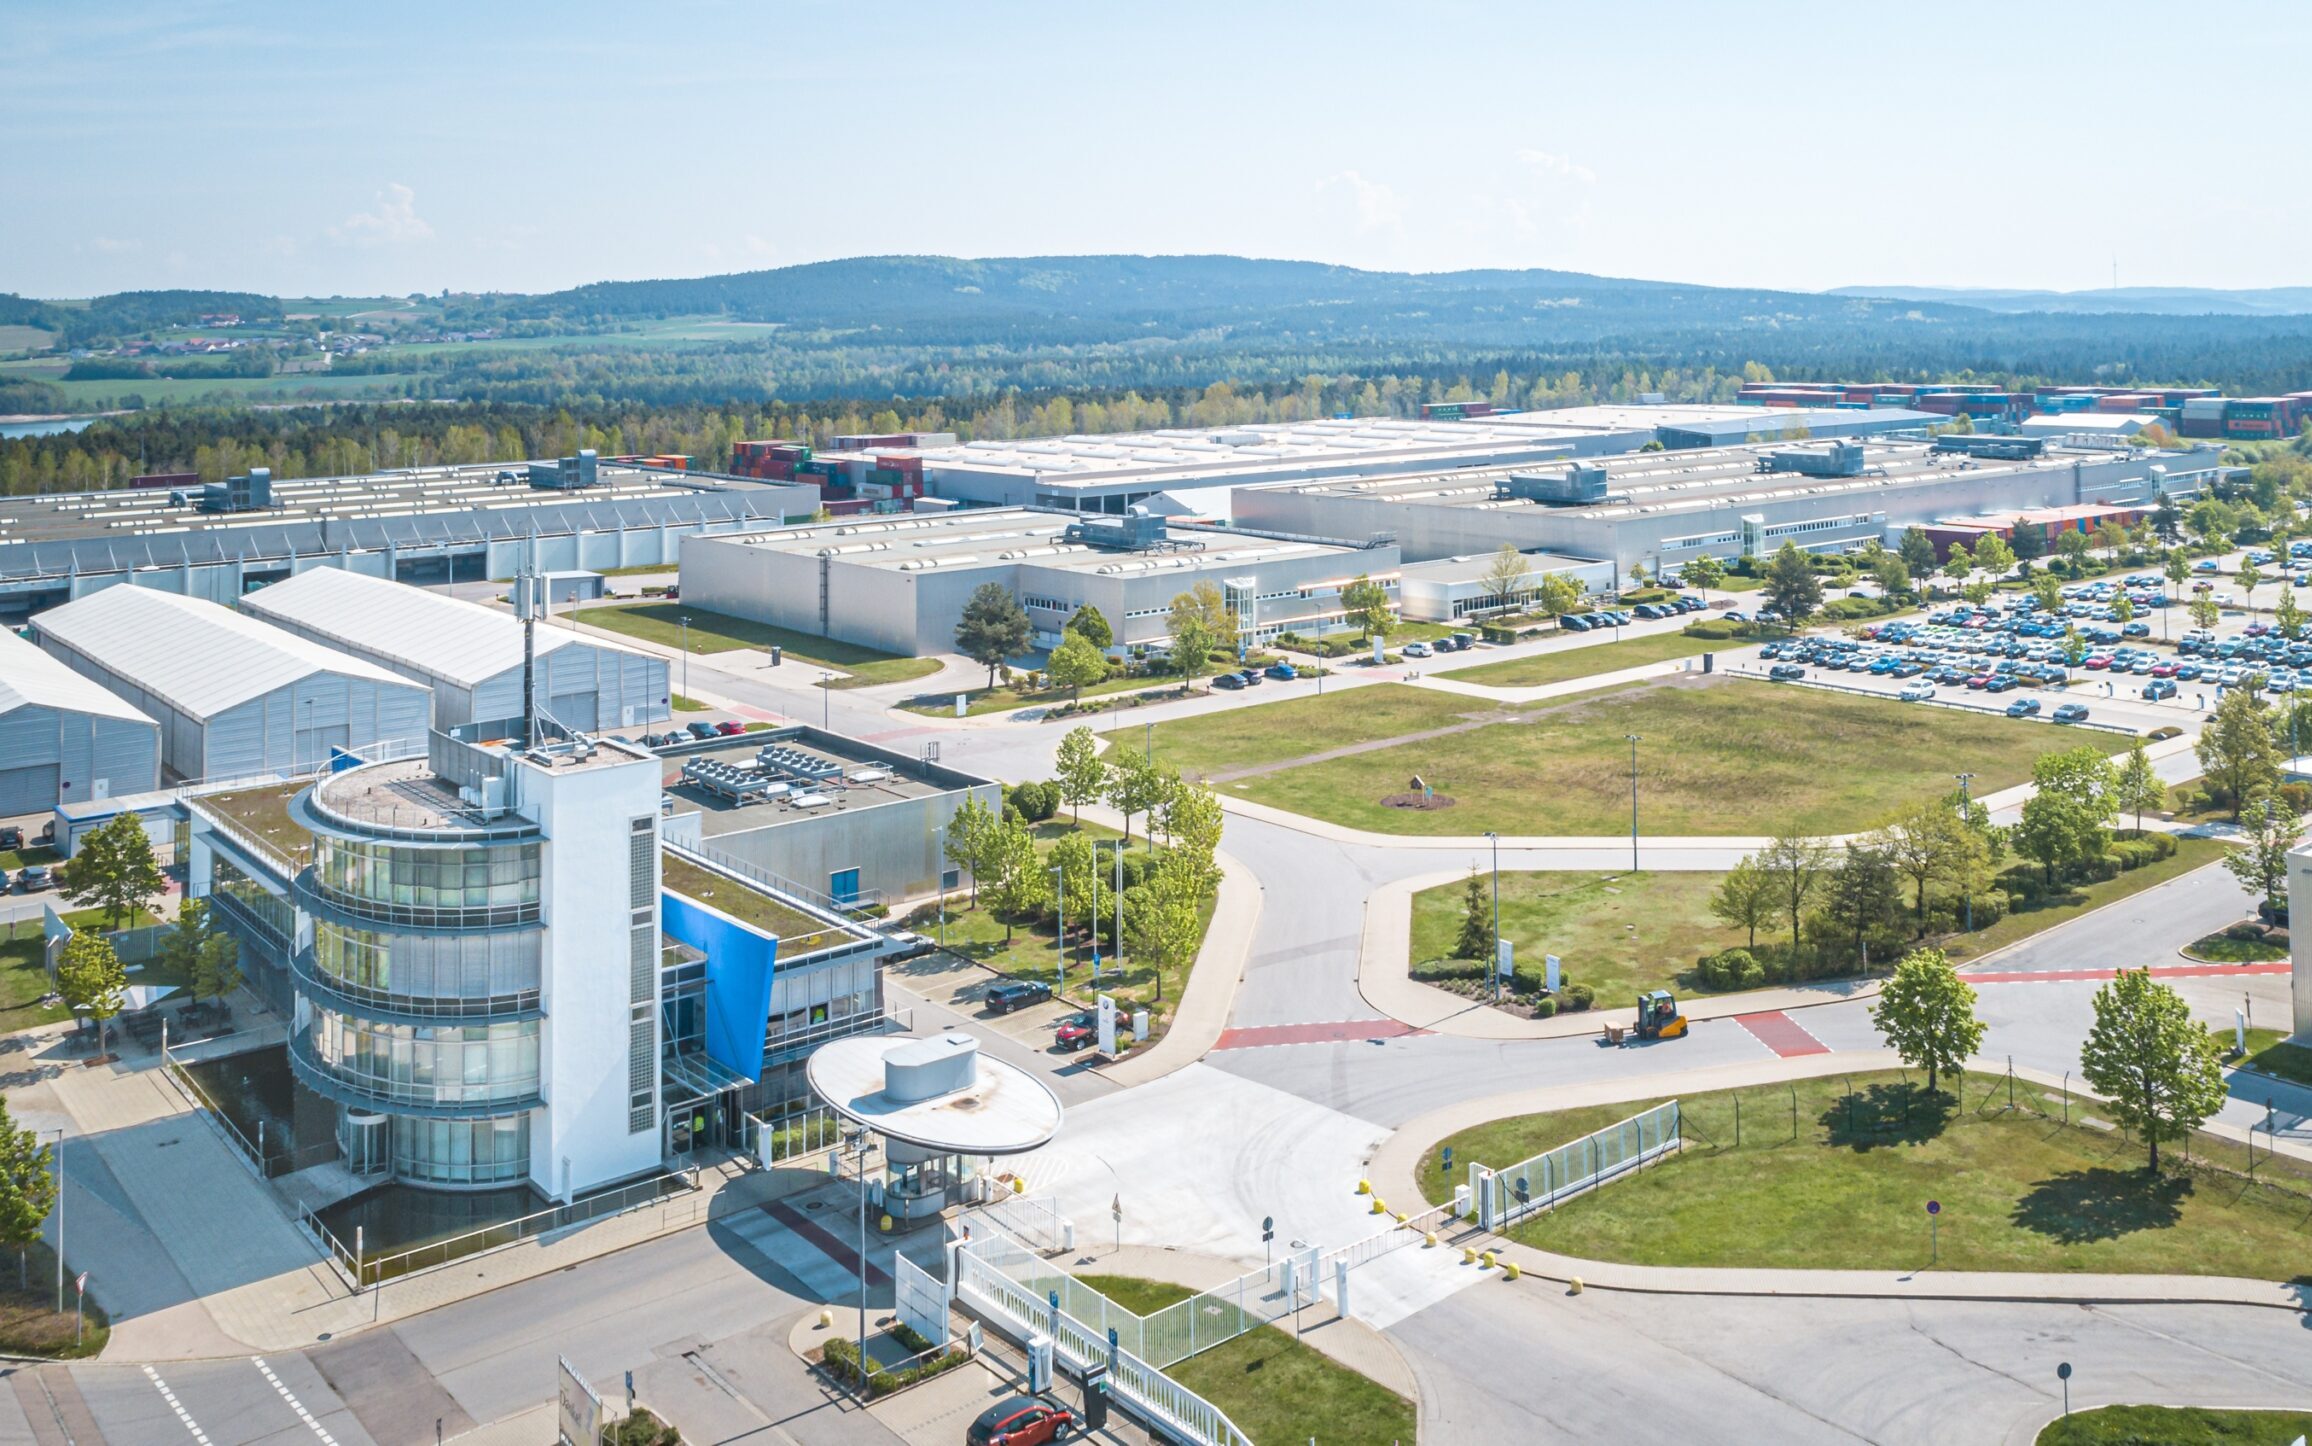 Nowe centrum testowania baterii: BMW Group do 2026 roku zainwestuje ponad 100 milionów euro w zakład w Wackersdorf.